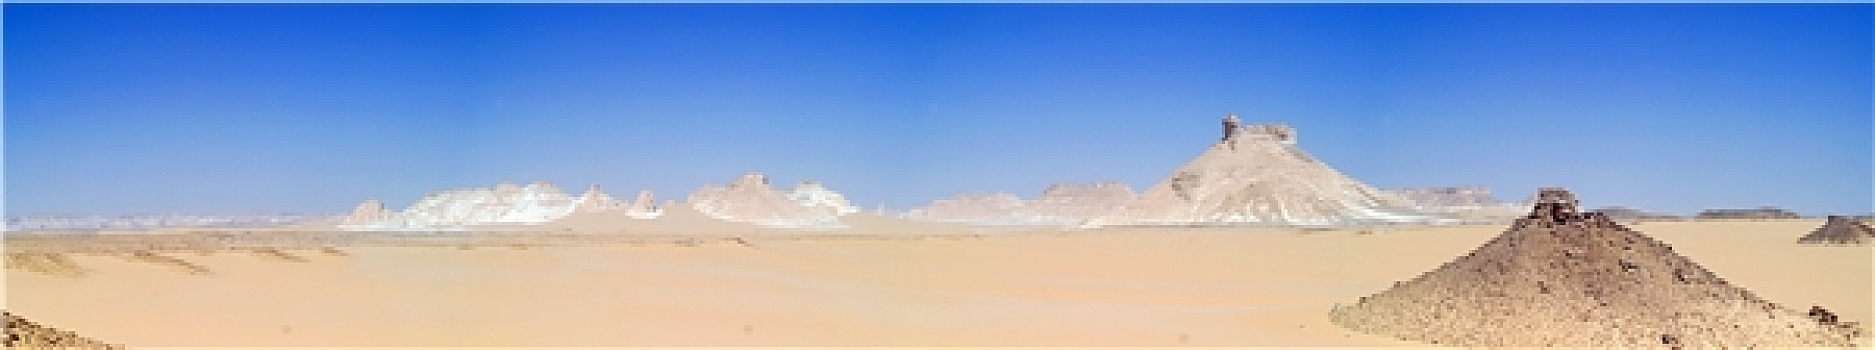 全景,照片,黑色,沙漠,埃及